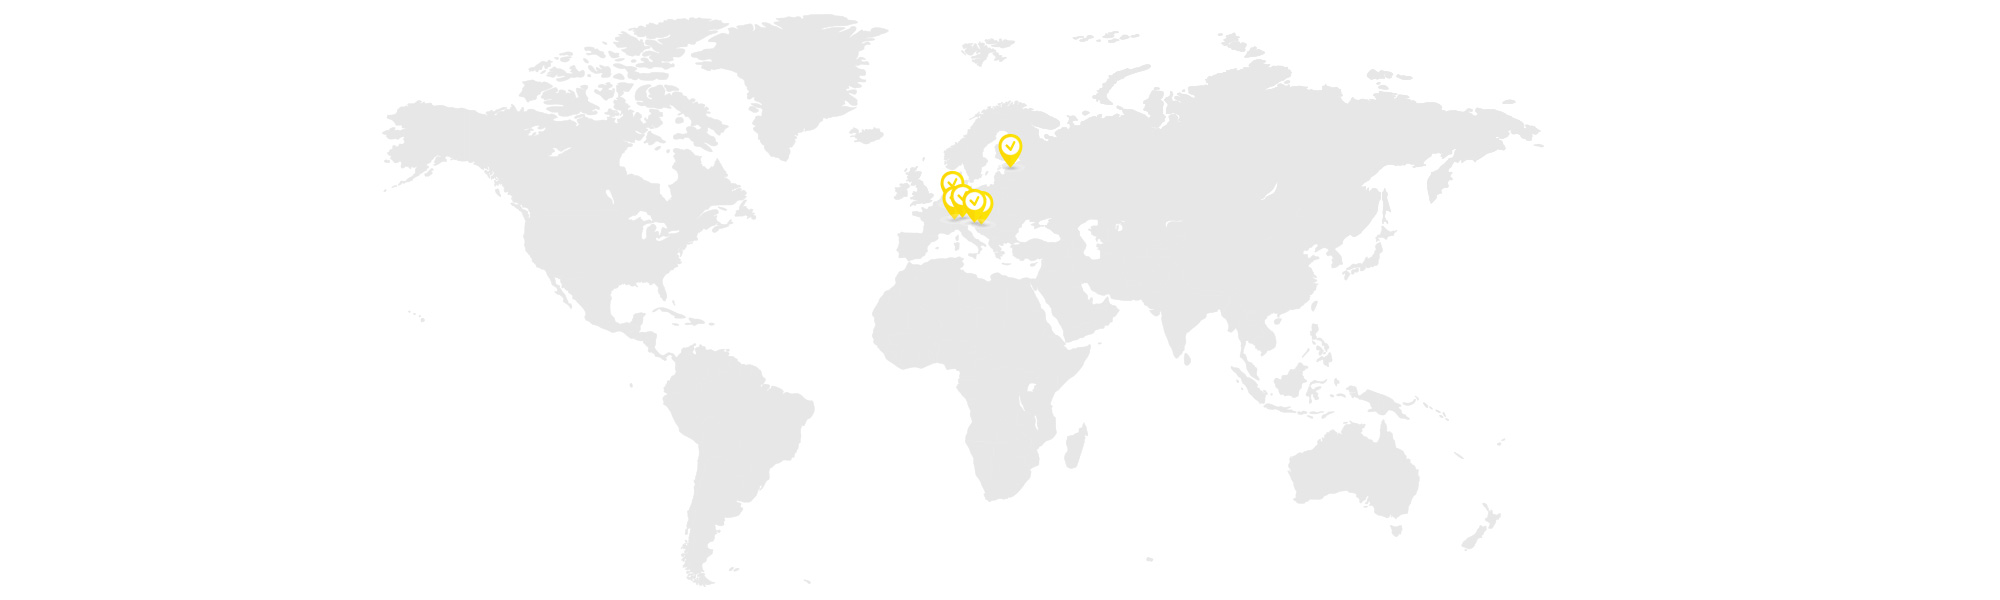 Totter Midi Partner sulla mappa del mondo